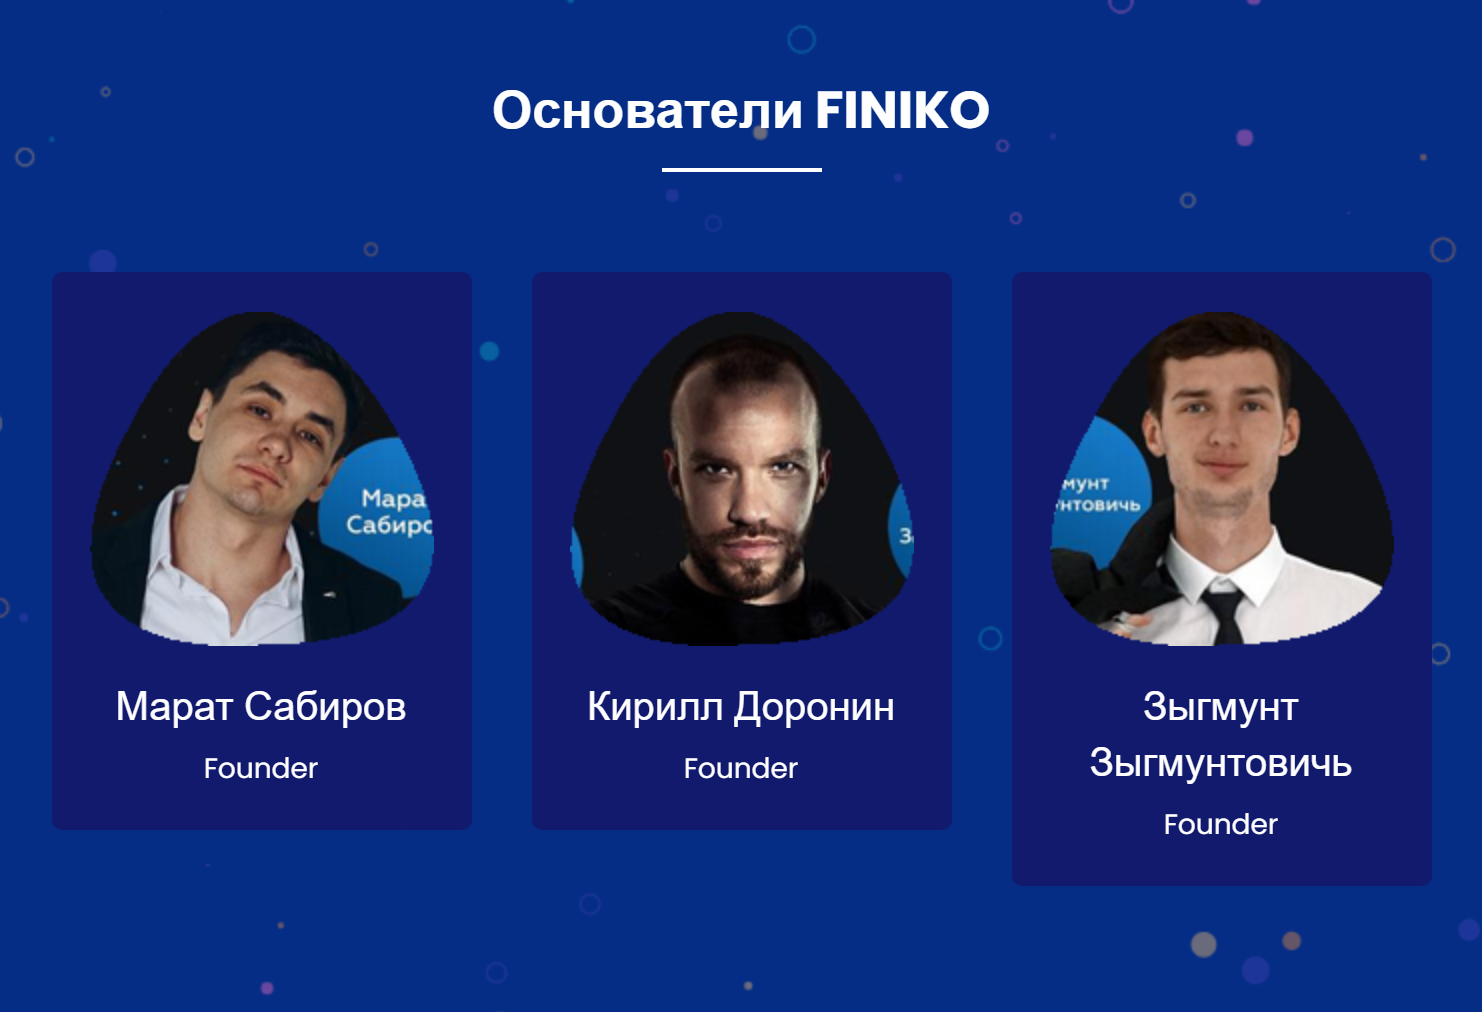 Сайт finiko.pro в числе основателей проекта также называет некоего Зыгмунта Зыгмунтовича. В независимых источниках мне не удалось найти человека со столь необычным именем, связанного с «Финико»